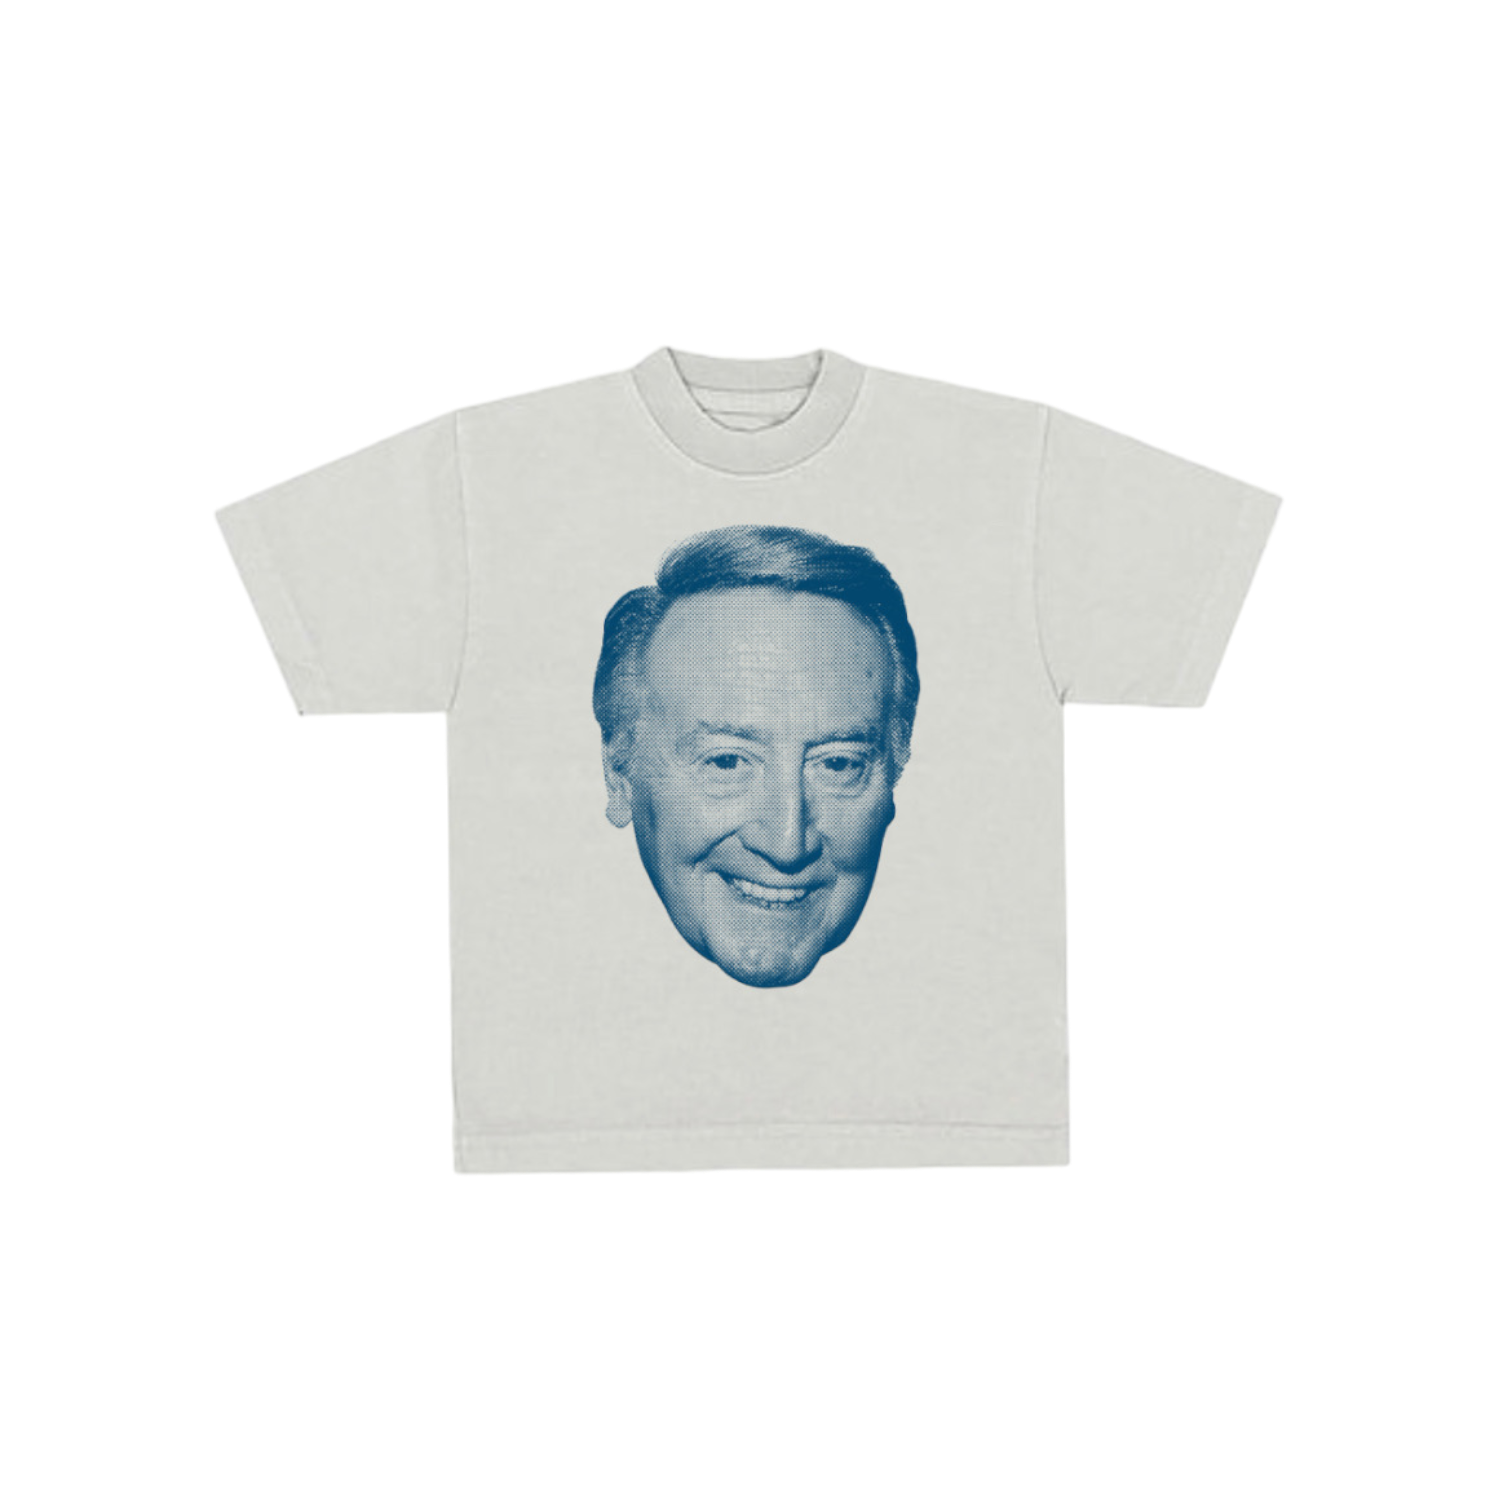 Vin Scully' Unisex Tie Dye T-Shirt